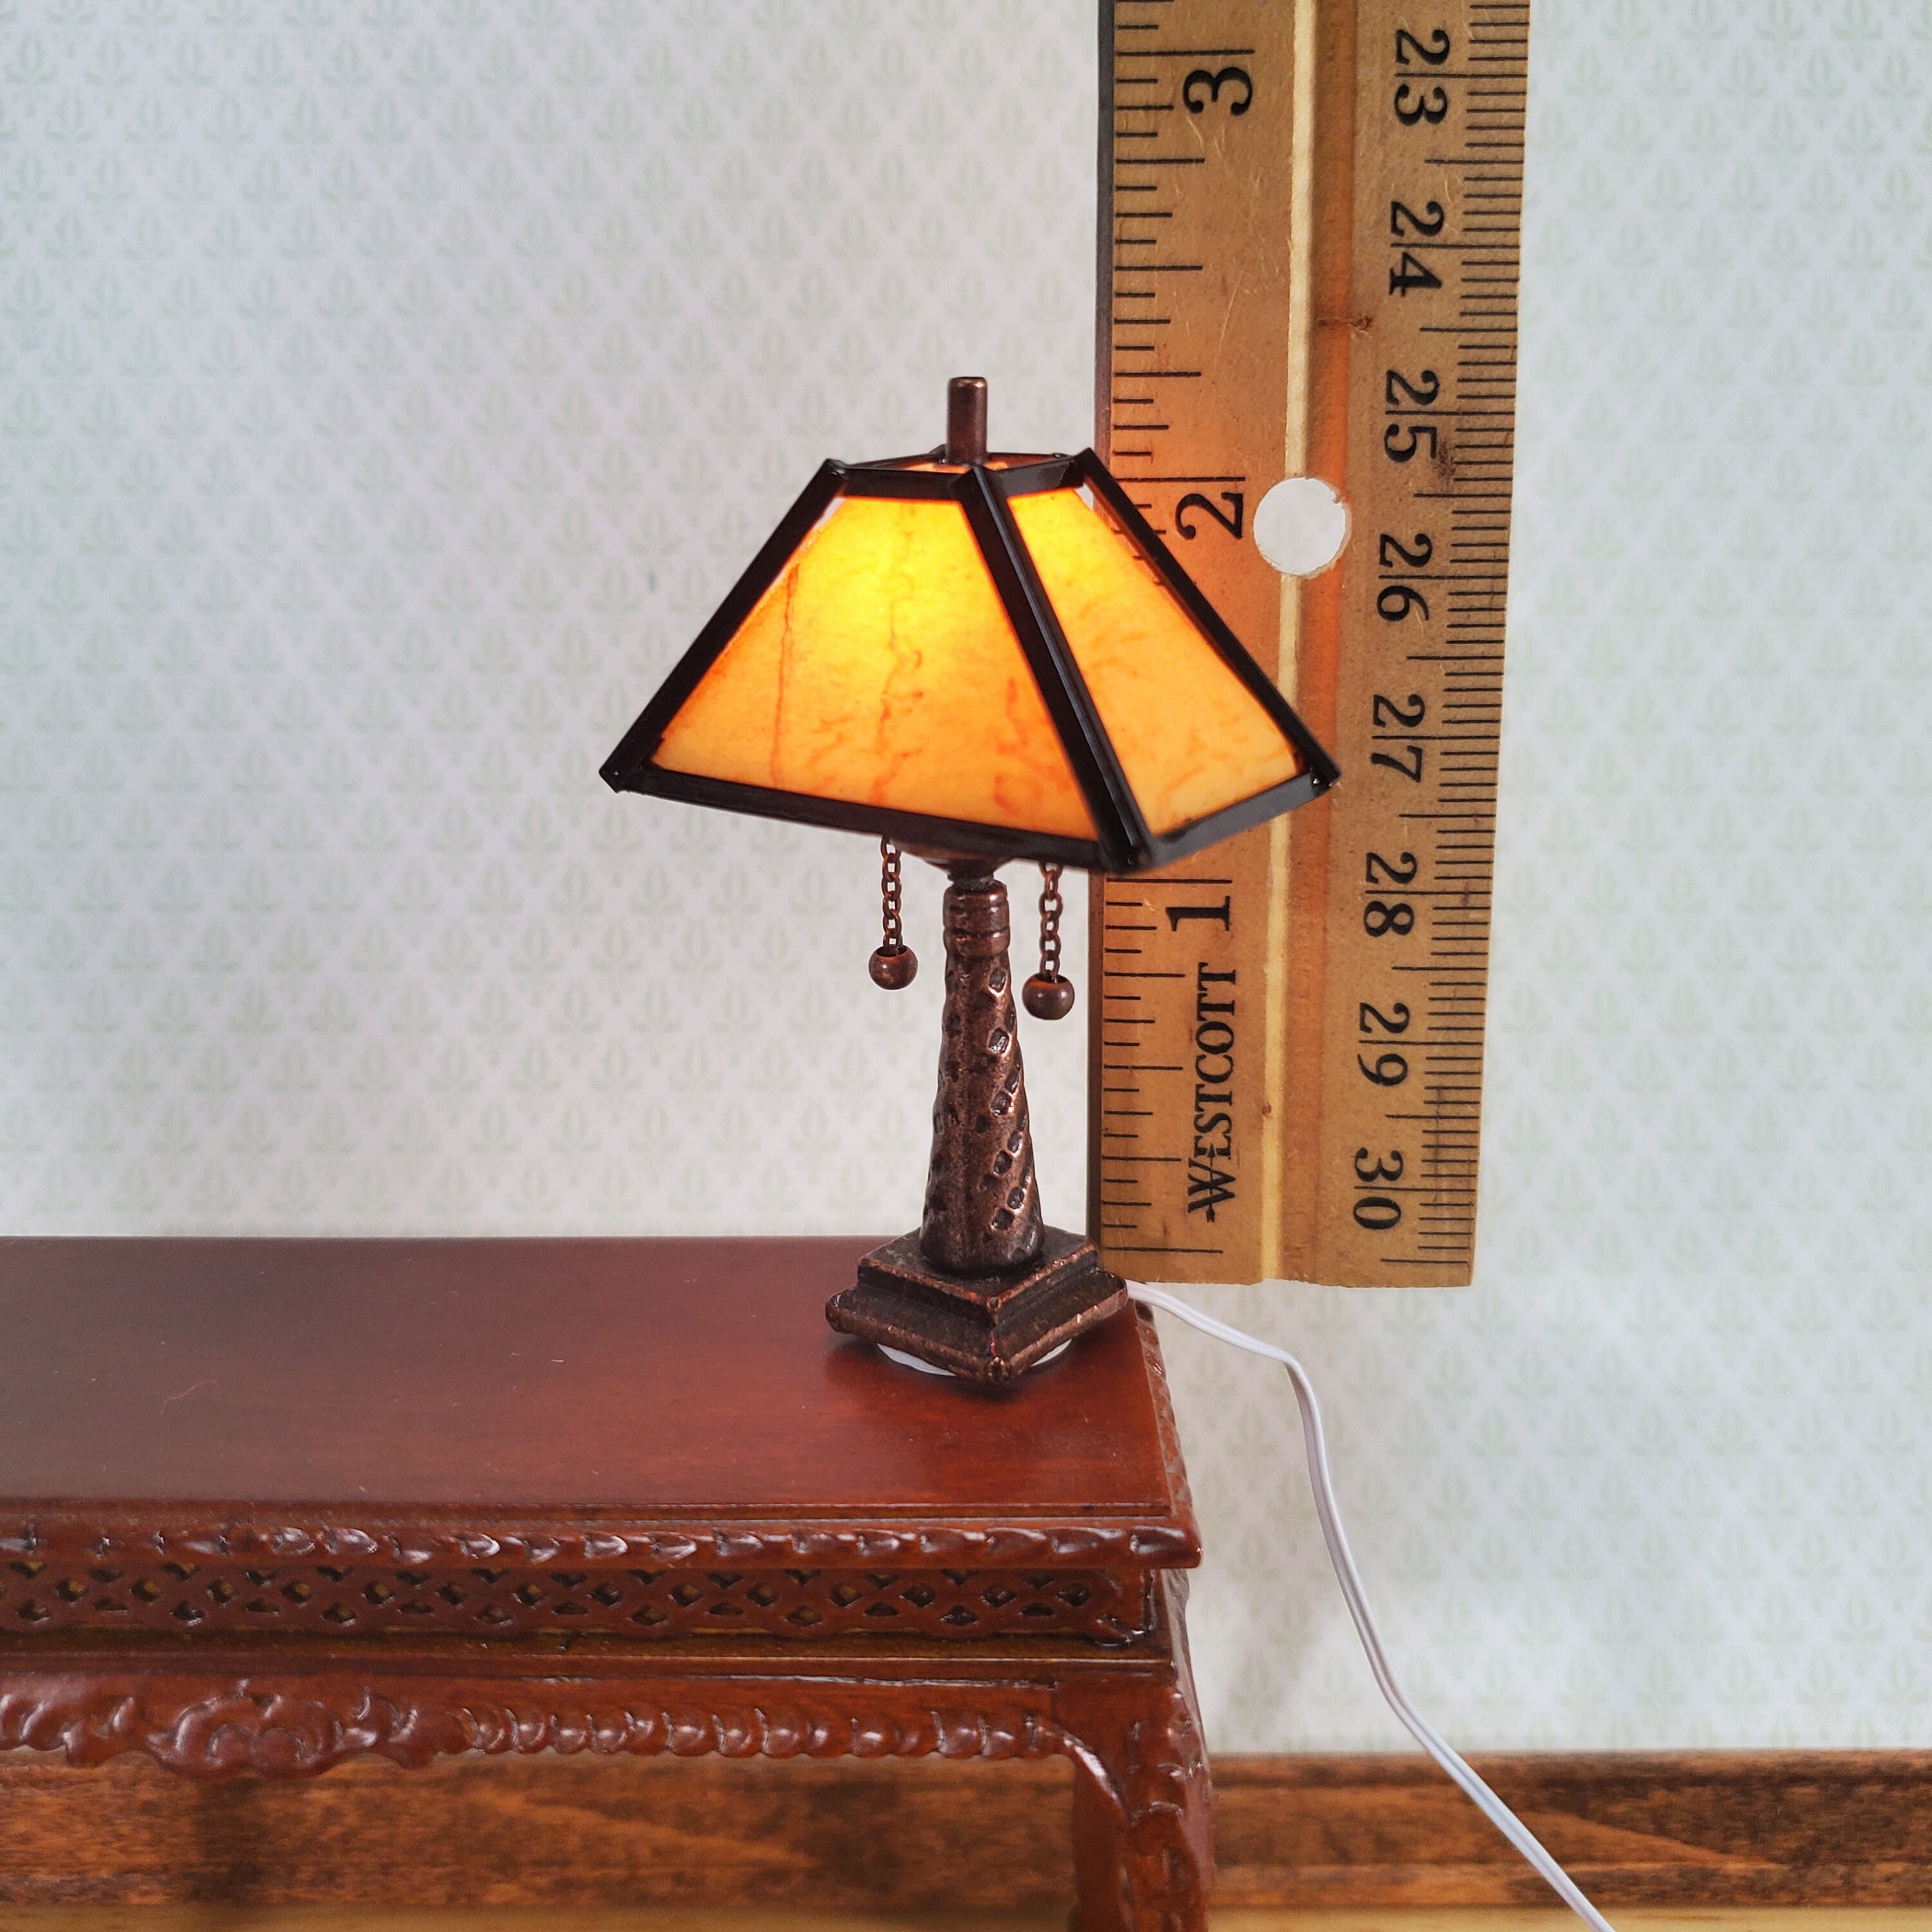 Lampe de maison de poupée Arts & Crafts Craftsman Style w/Plug Large 1:12  Scale Miniature 12 volt -  France